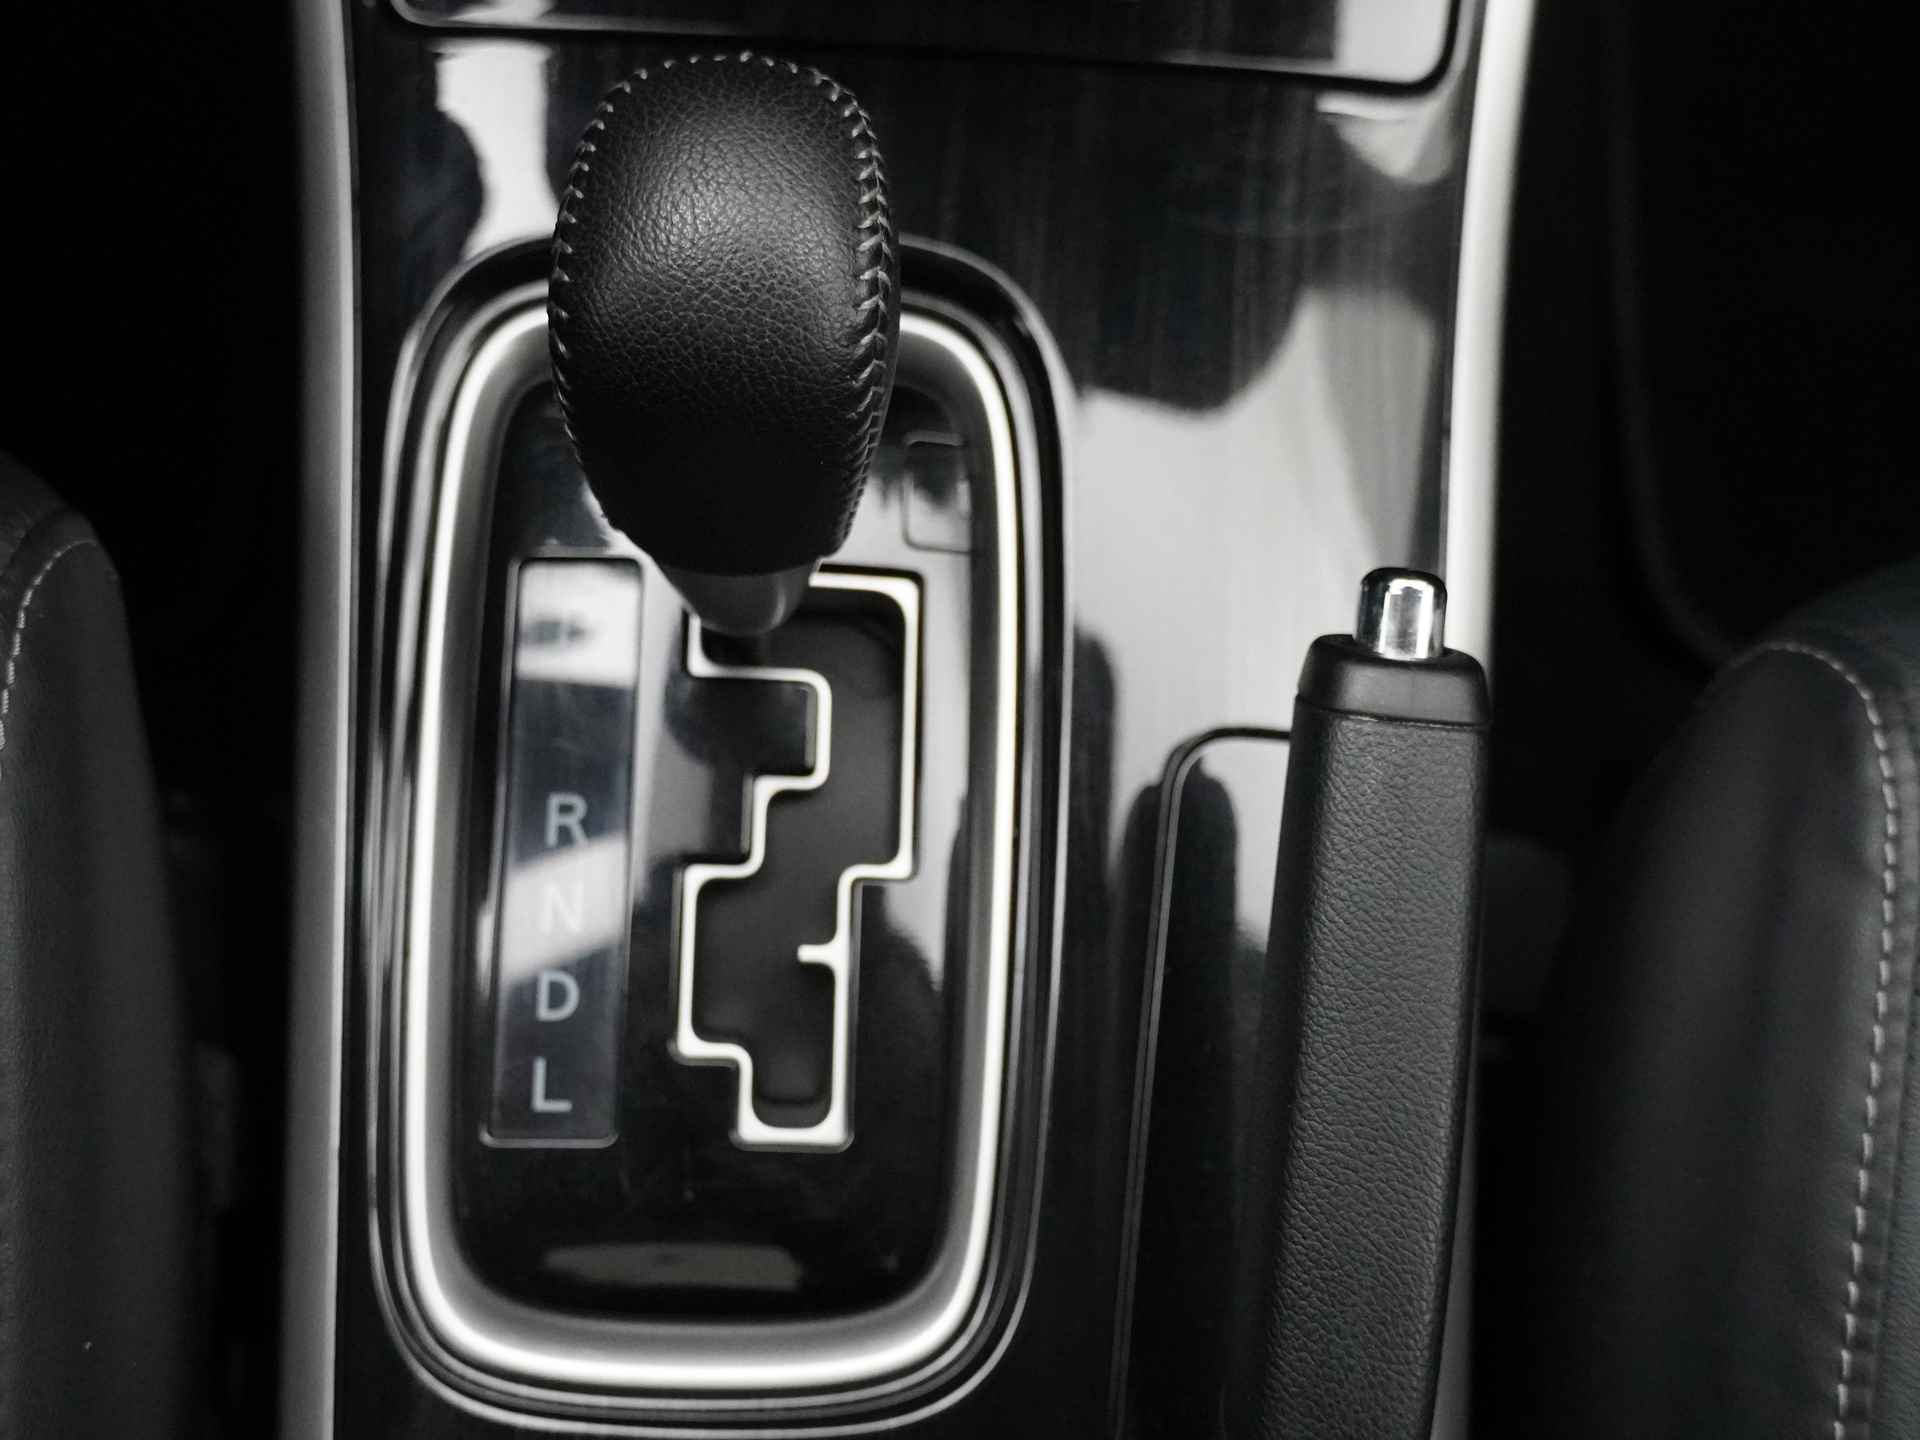 Mitsubishi Outlander 2.0 Instyle+ 4WD - Schuifkanteldak - Lederen bekleding - Voorraam verwarming - Apple CarPlay / Android Auto - Elektrische achterklep - 12 Maanden bovag garantie - 33/48